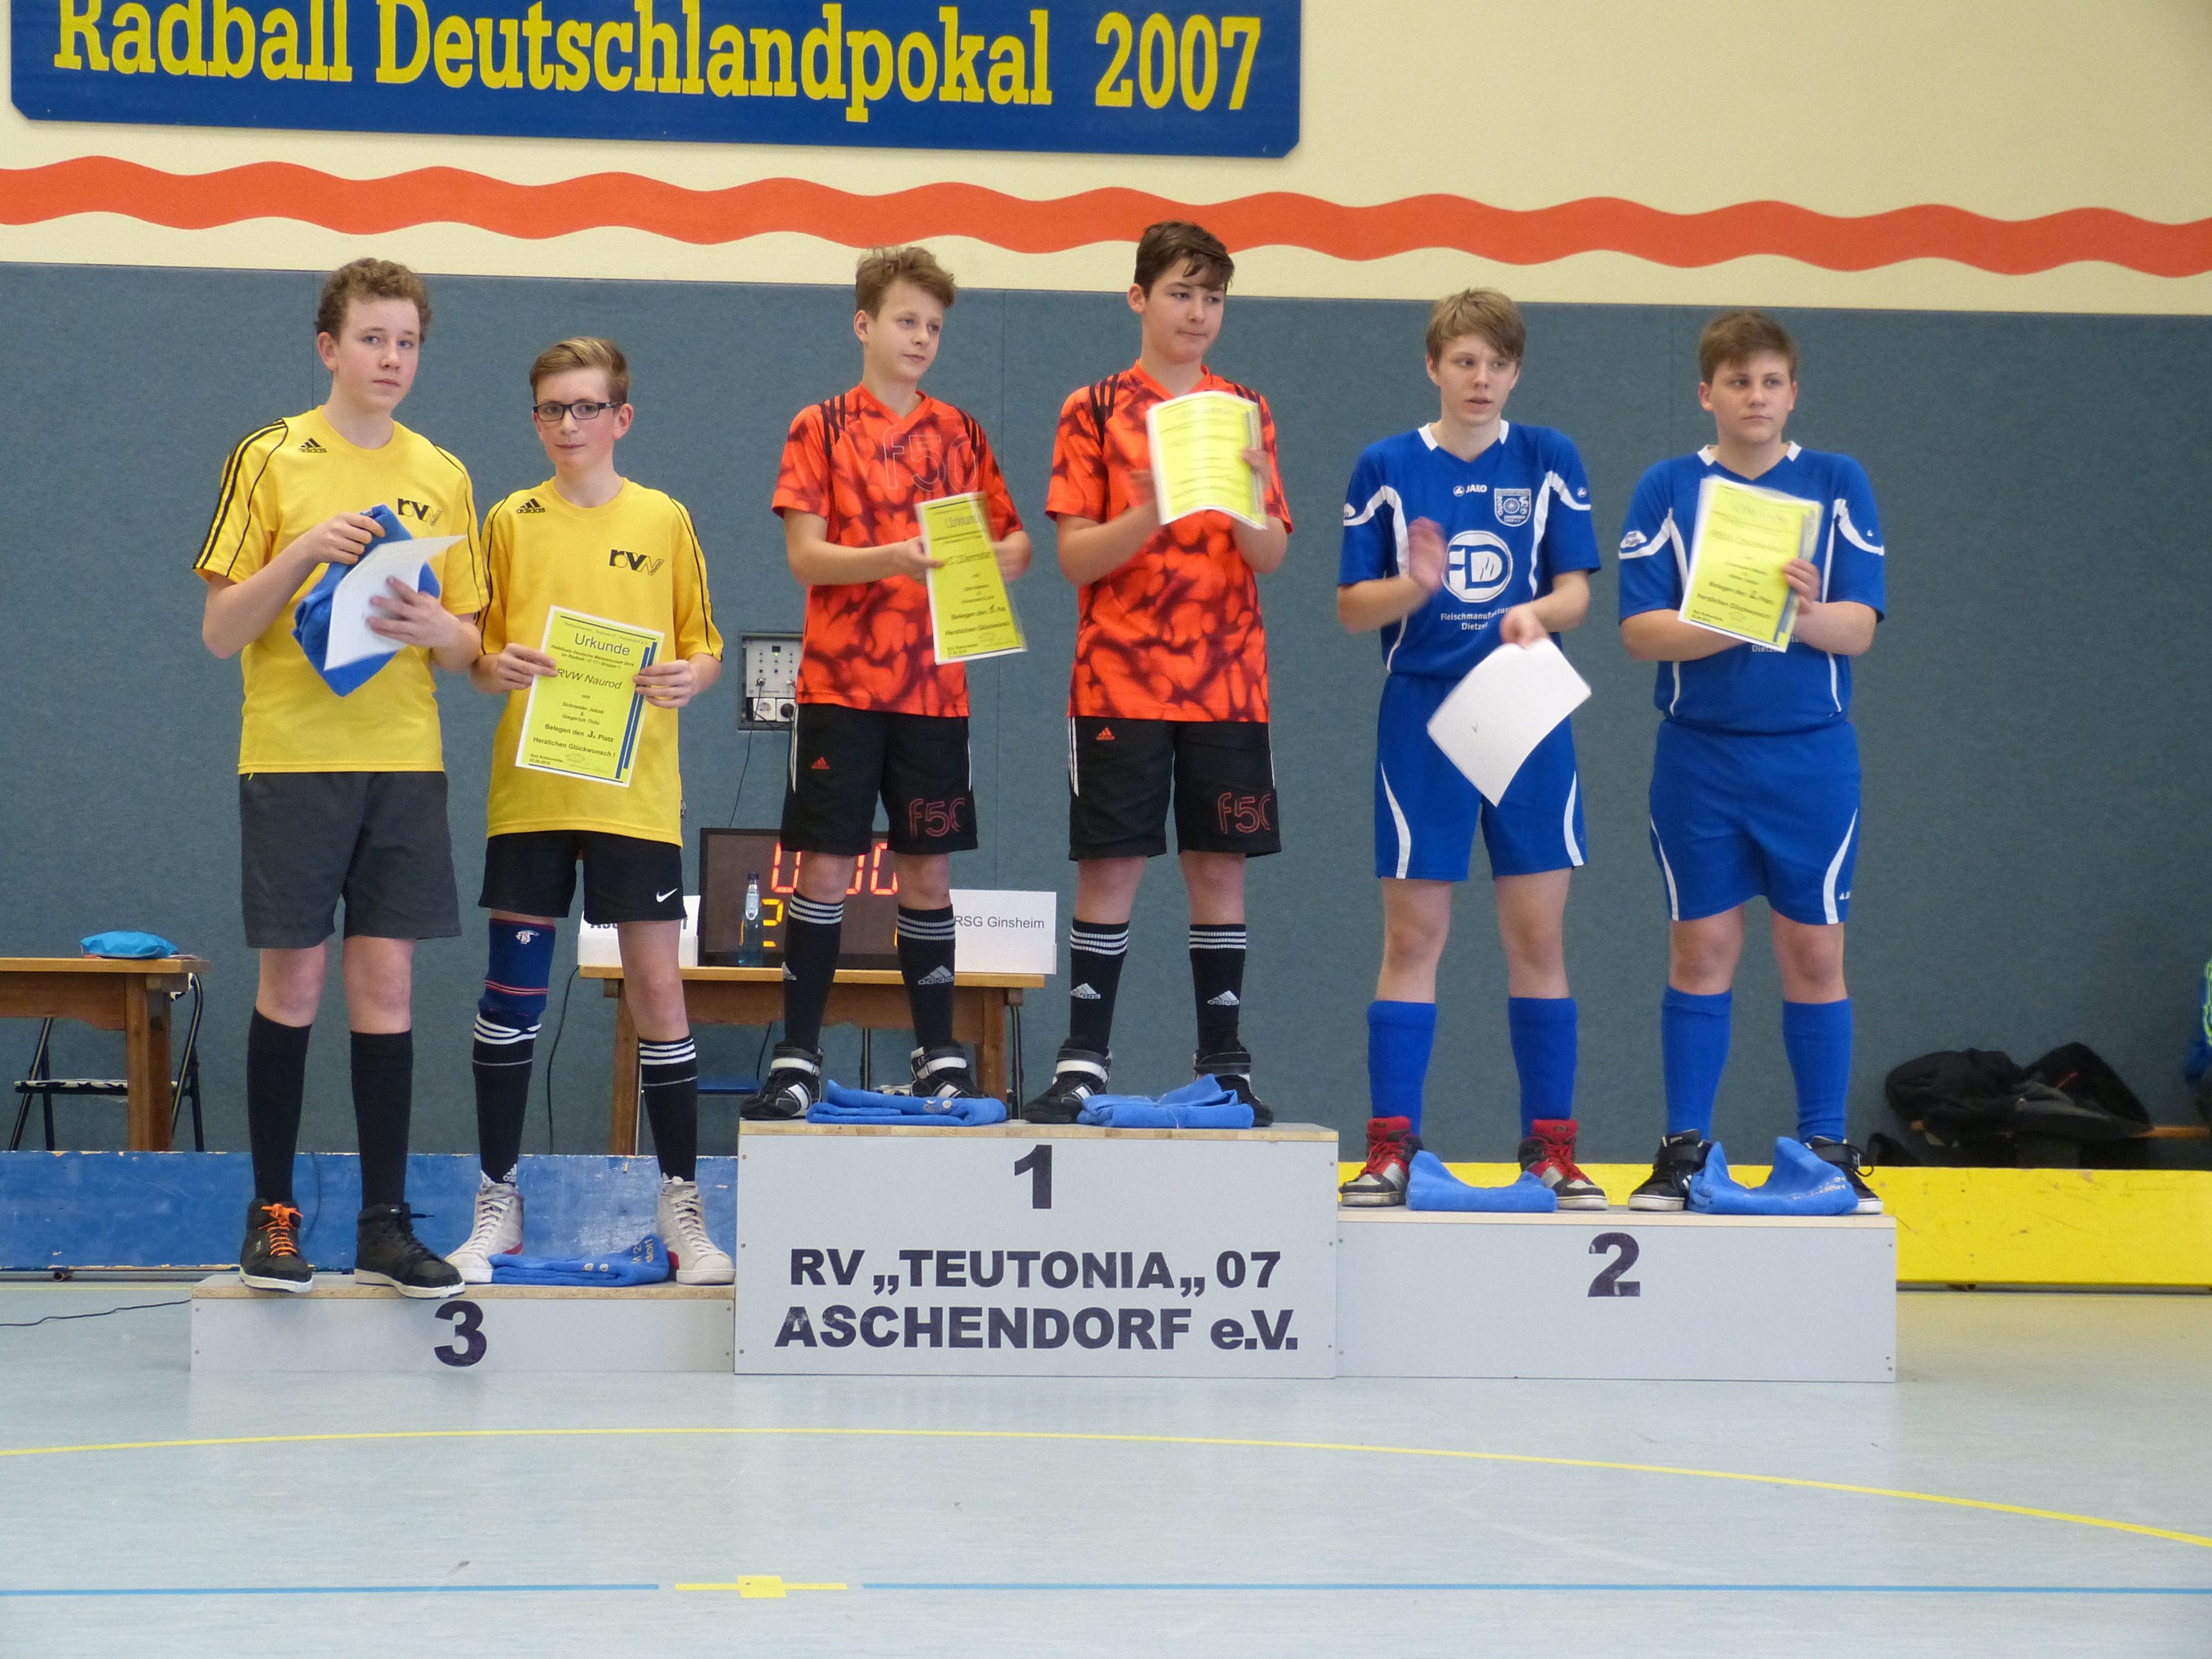 Siegehrung beim Halbfinale der U17 in Aschendorf mit den Drittplatzierten Thilo Giegerich und Jakob Schneider